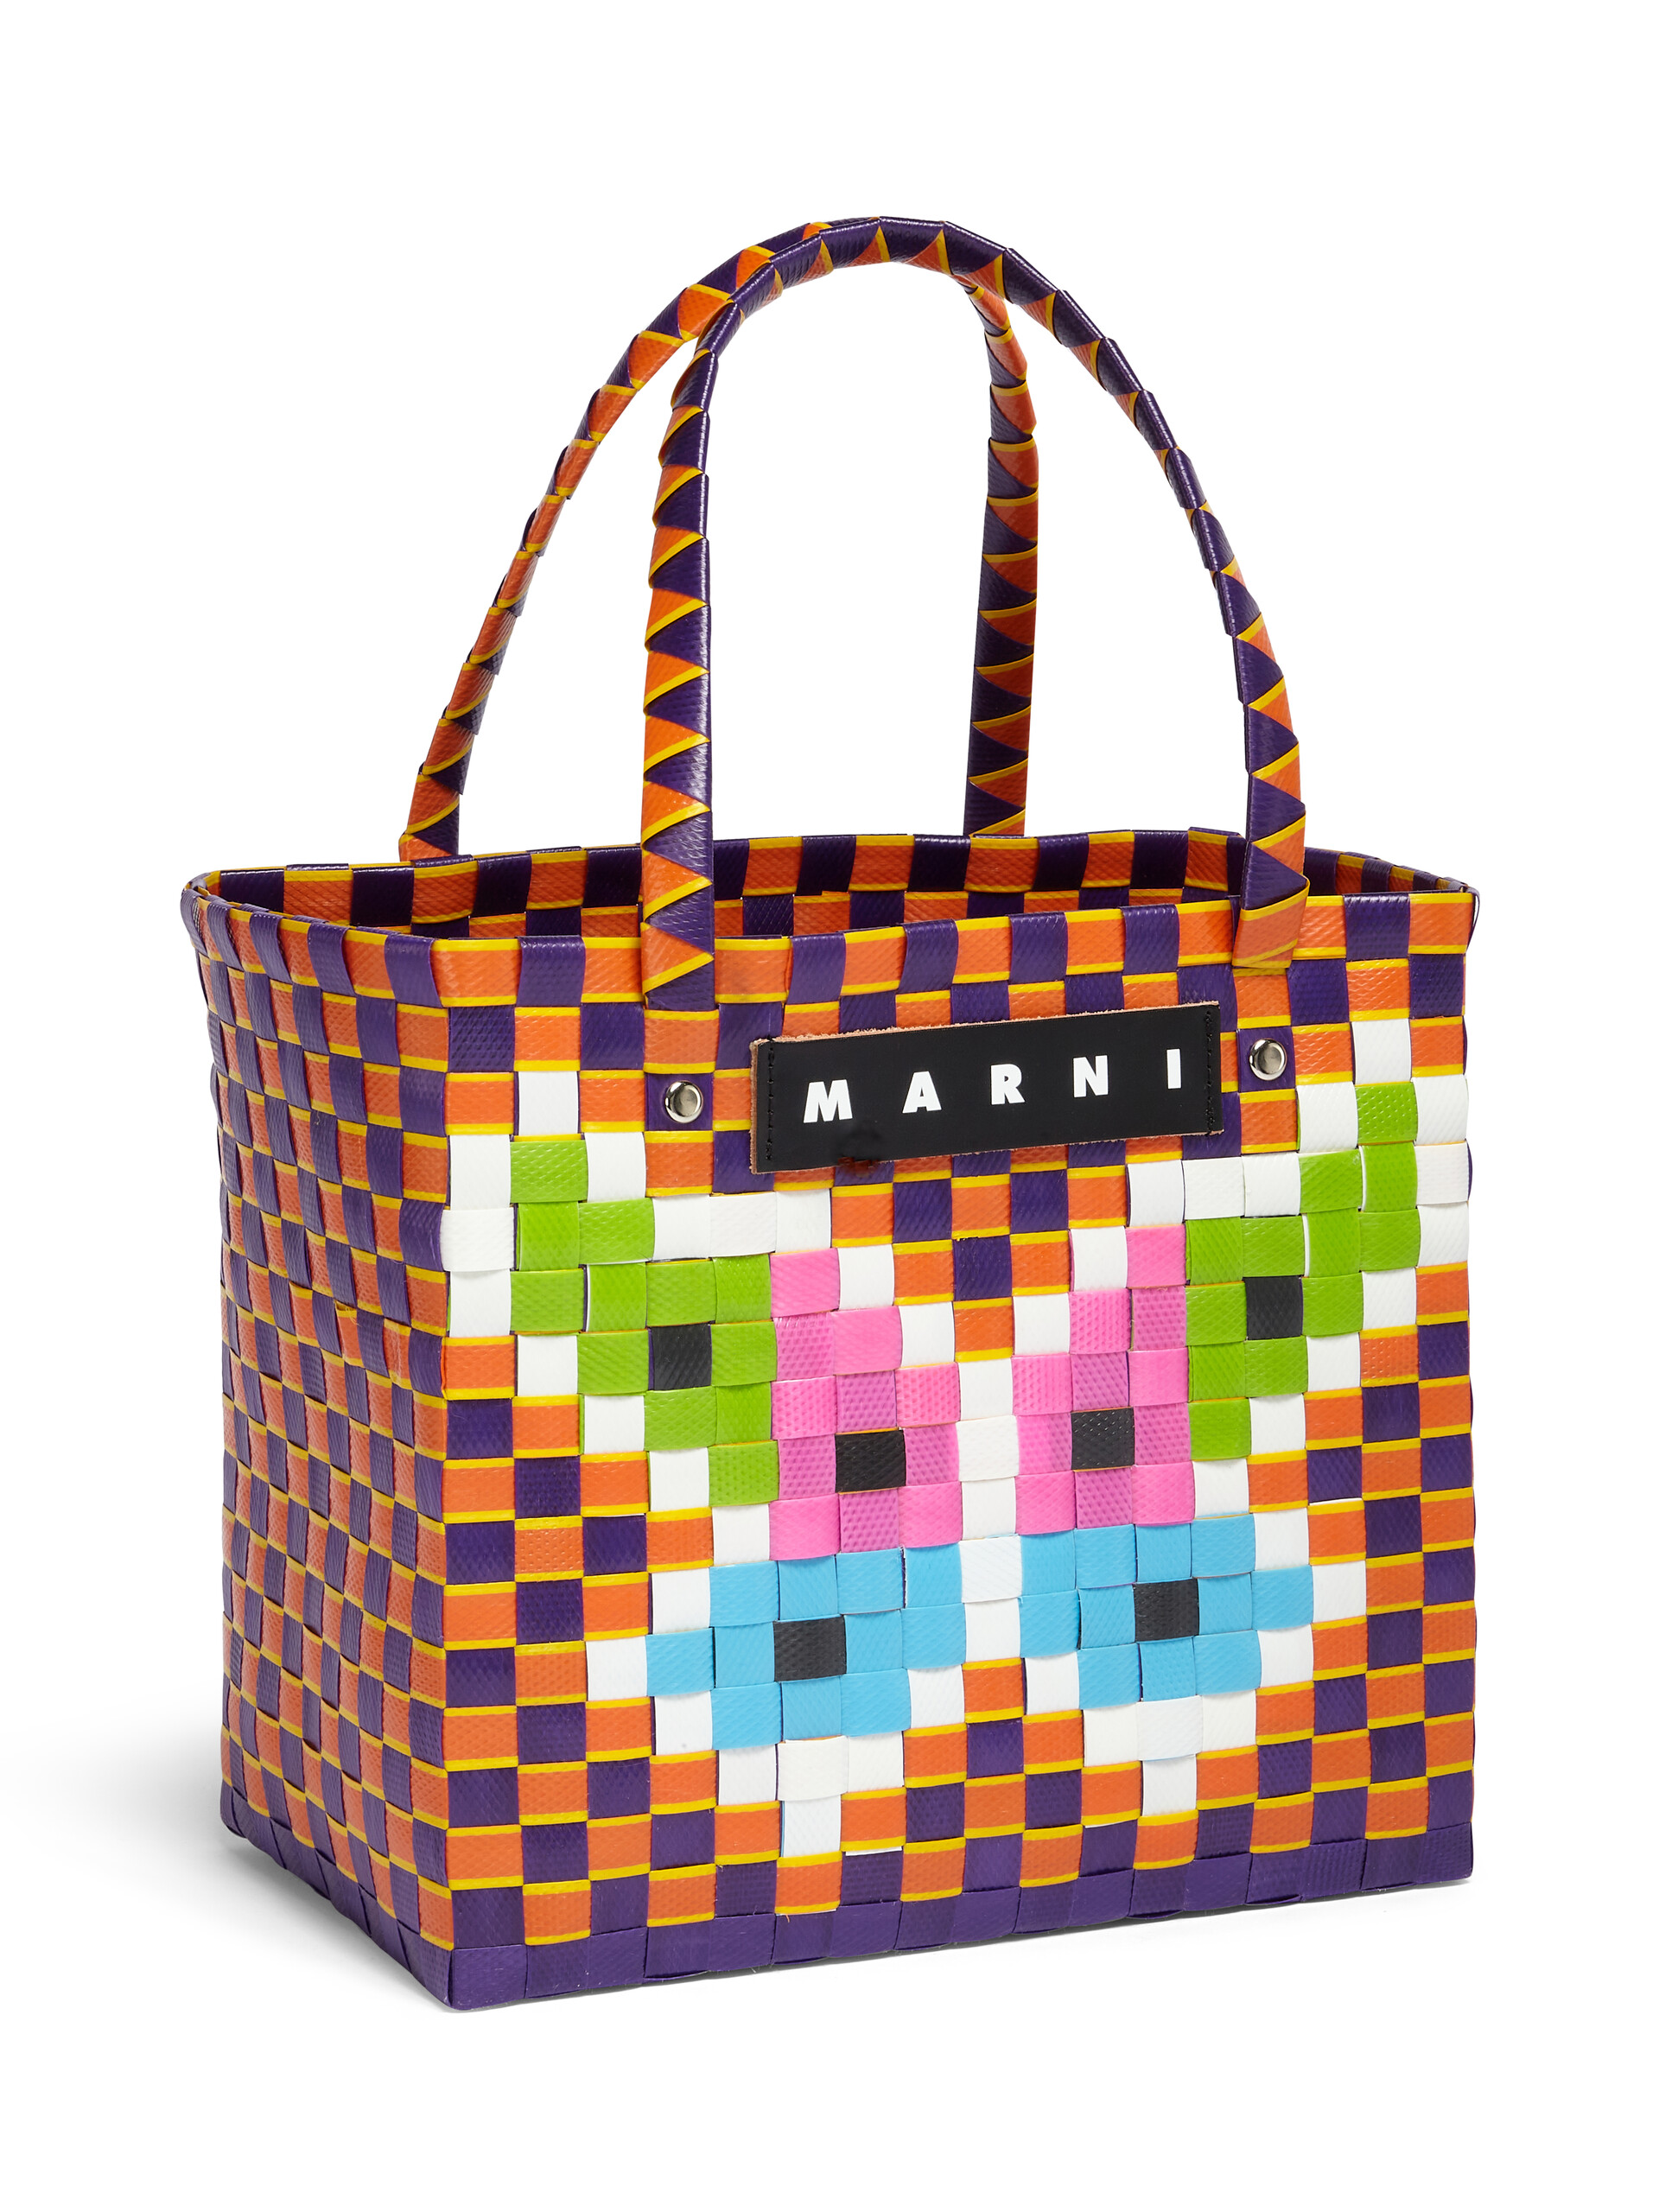 MARNI MARKET FLOWER MINI BASKET bag in orange butterfly motif